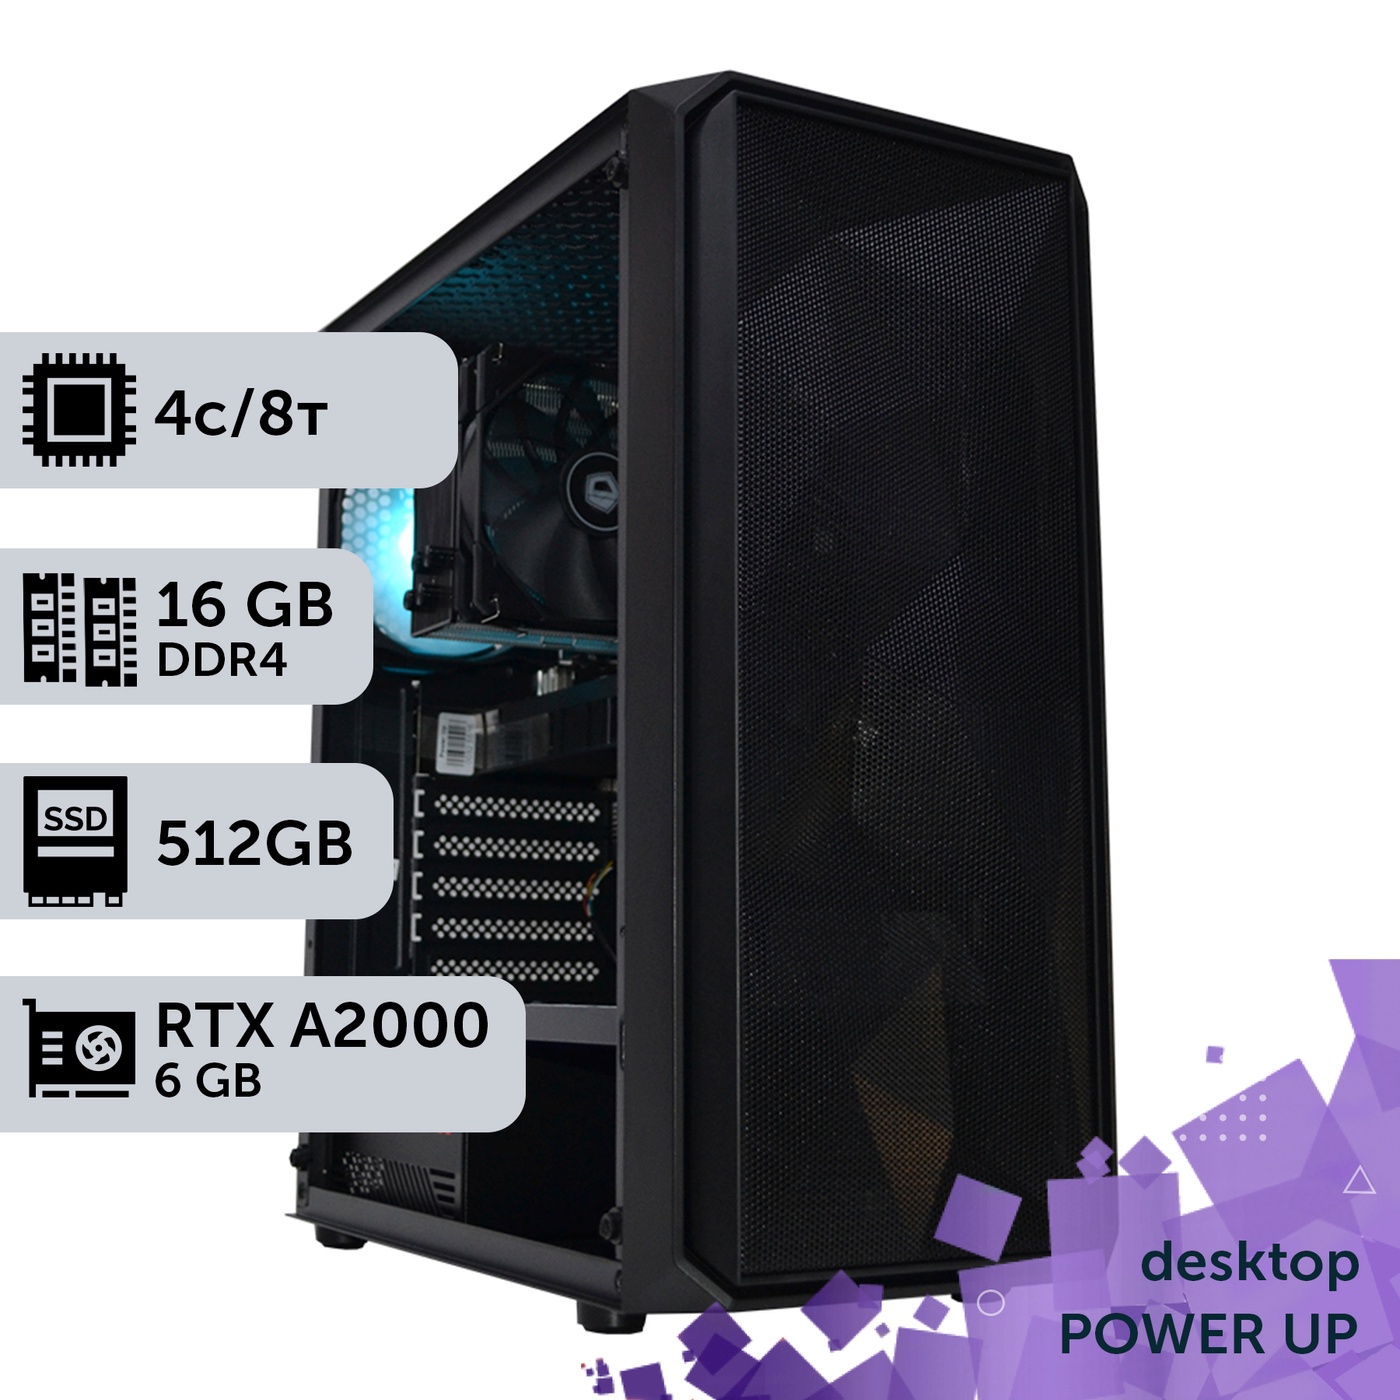 Рабочая станция PowerUp Desktop #180 Core i3 12100F/16 GB/SSD 512GB/NVIDIA Quadro RTX A2000 6GB